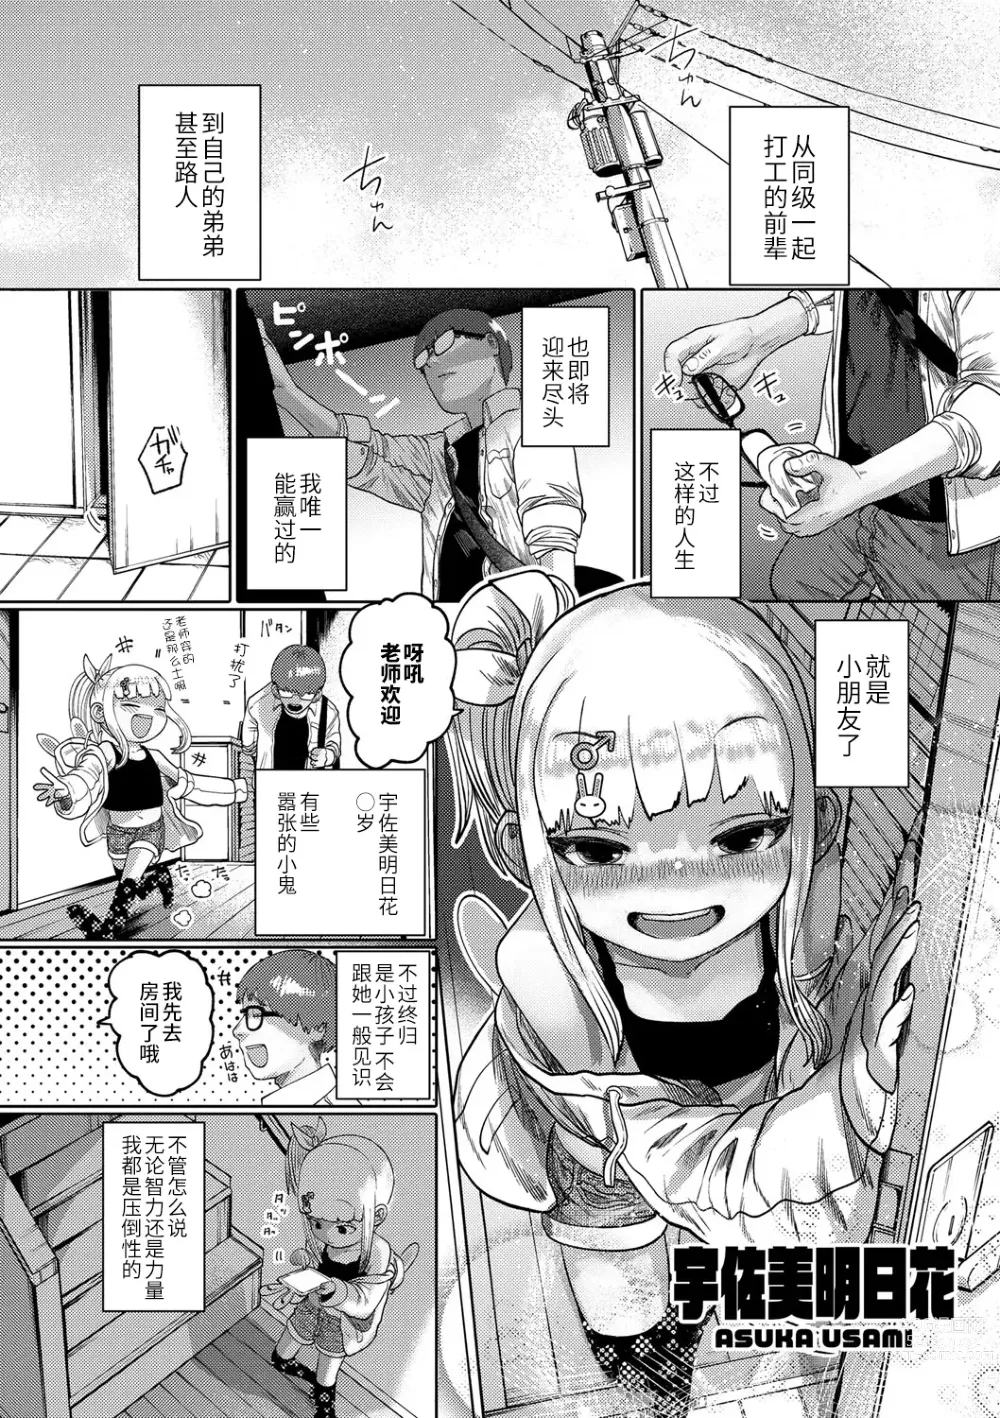 Page 2 of manga ねーうしとらうー! #1-5